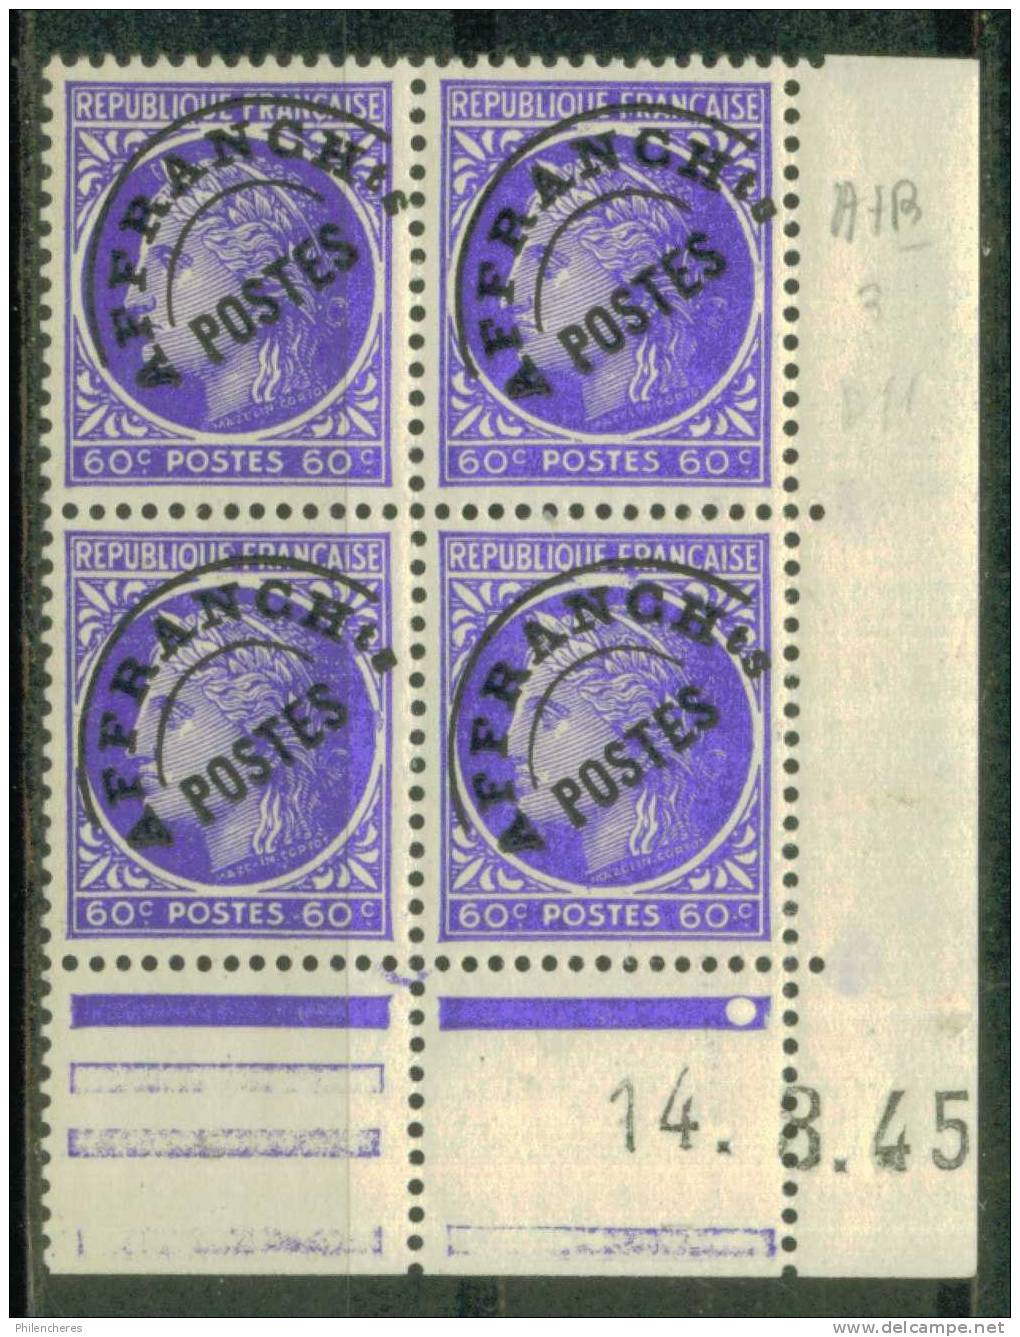 France Bloc De 4 - Coin Daté 1945 - Yvert Préoblitéré N° 87 X - Cote 4 Euros - Prix De Départ 1 Euro - Precancels